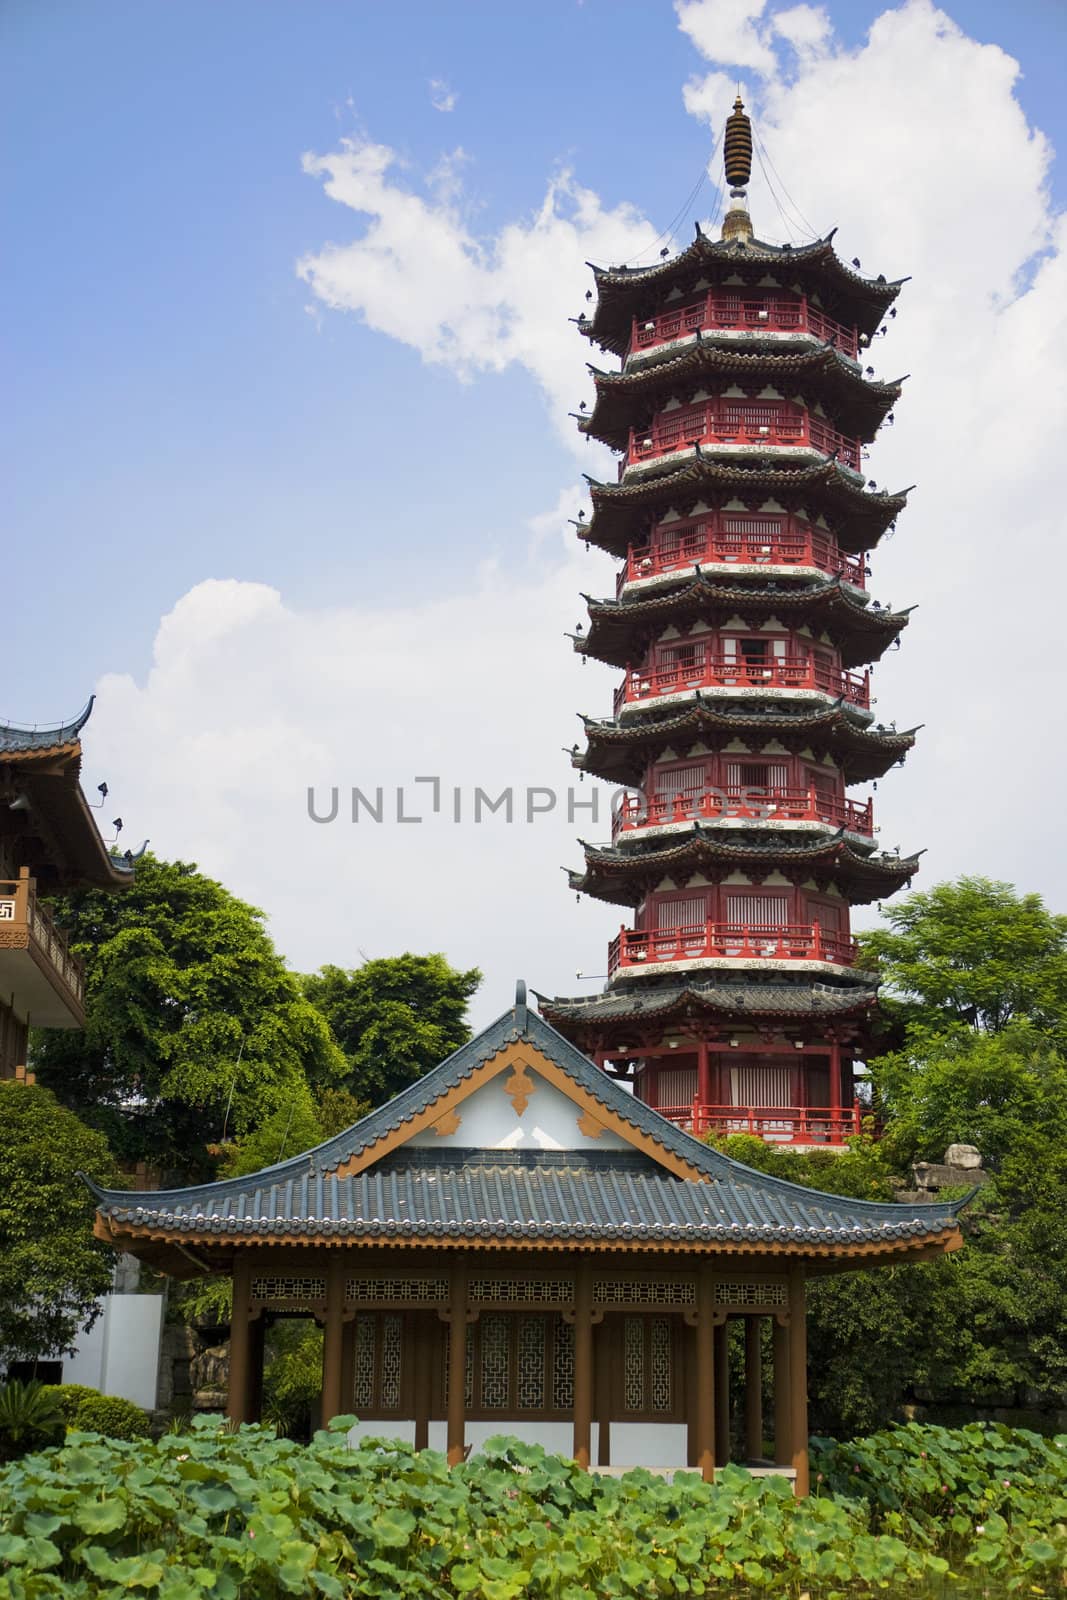 Image of the Mulong Lake Pagoda at Guilin, China.